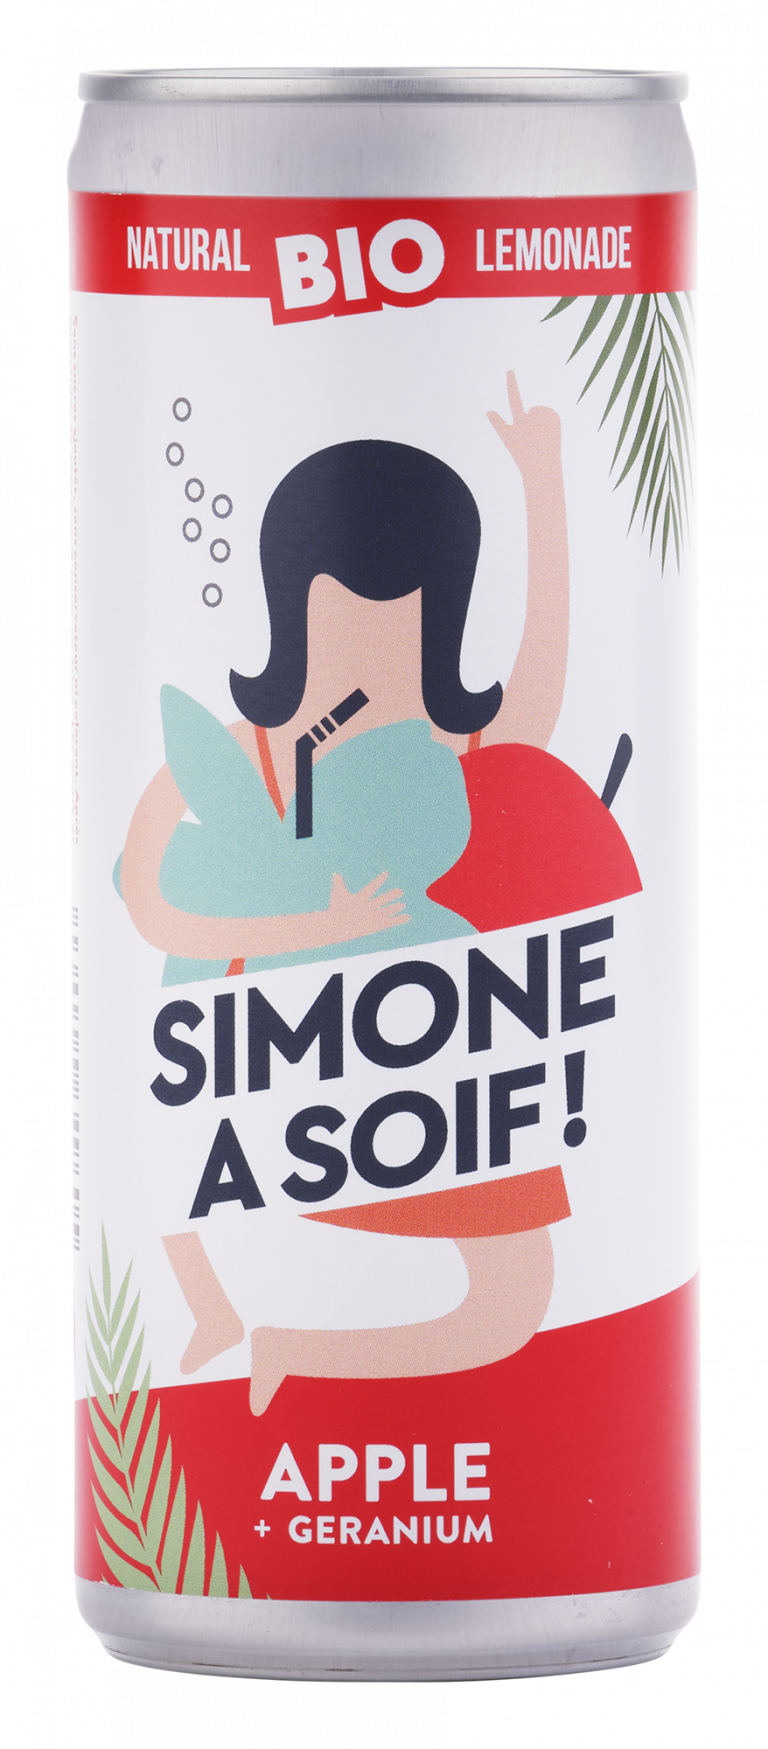 Limonade BIO Simone a Soif! pétillant pomme + géranium